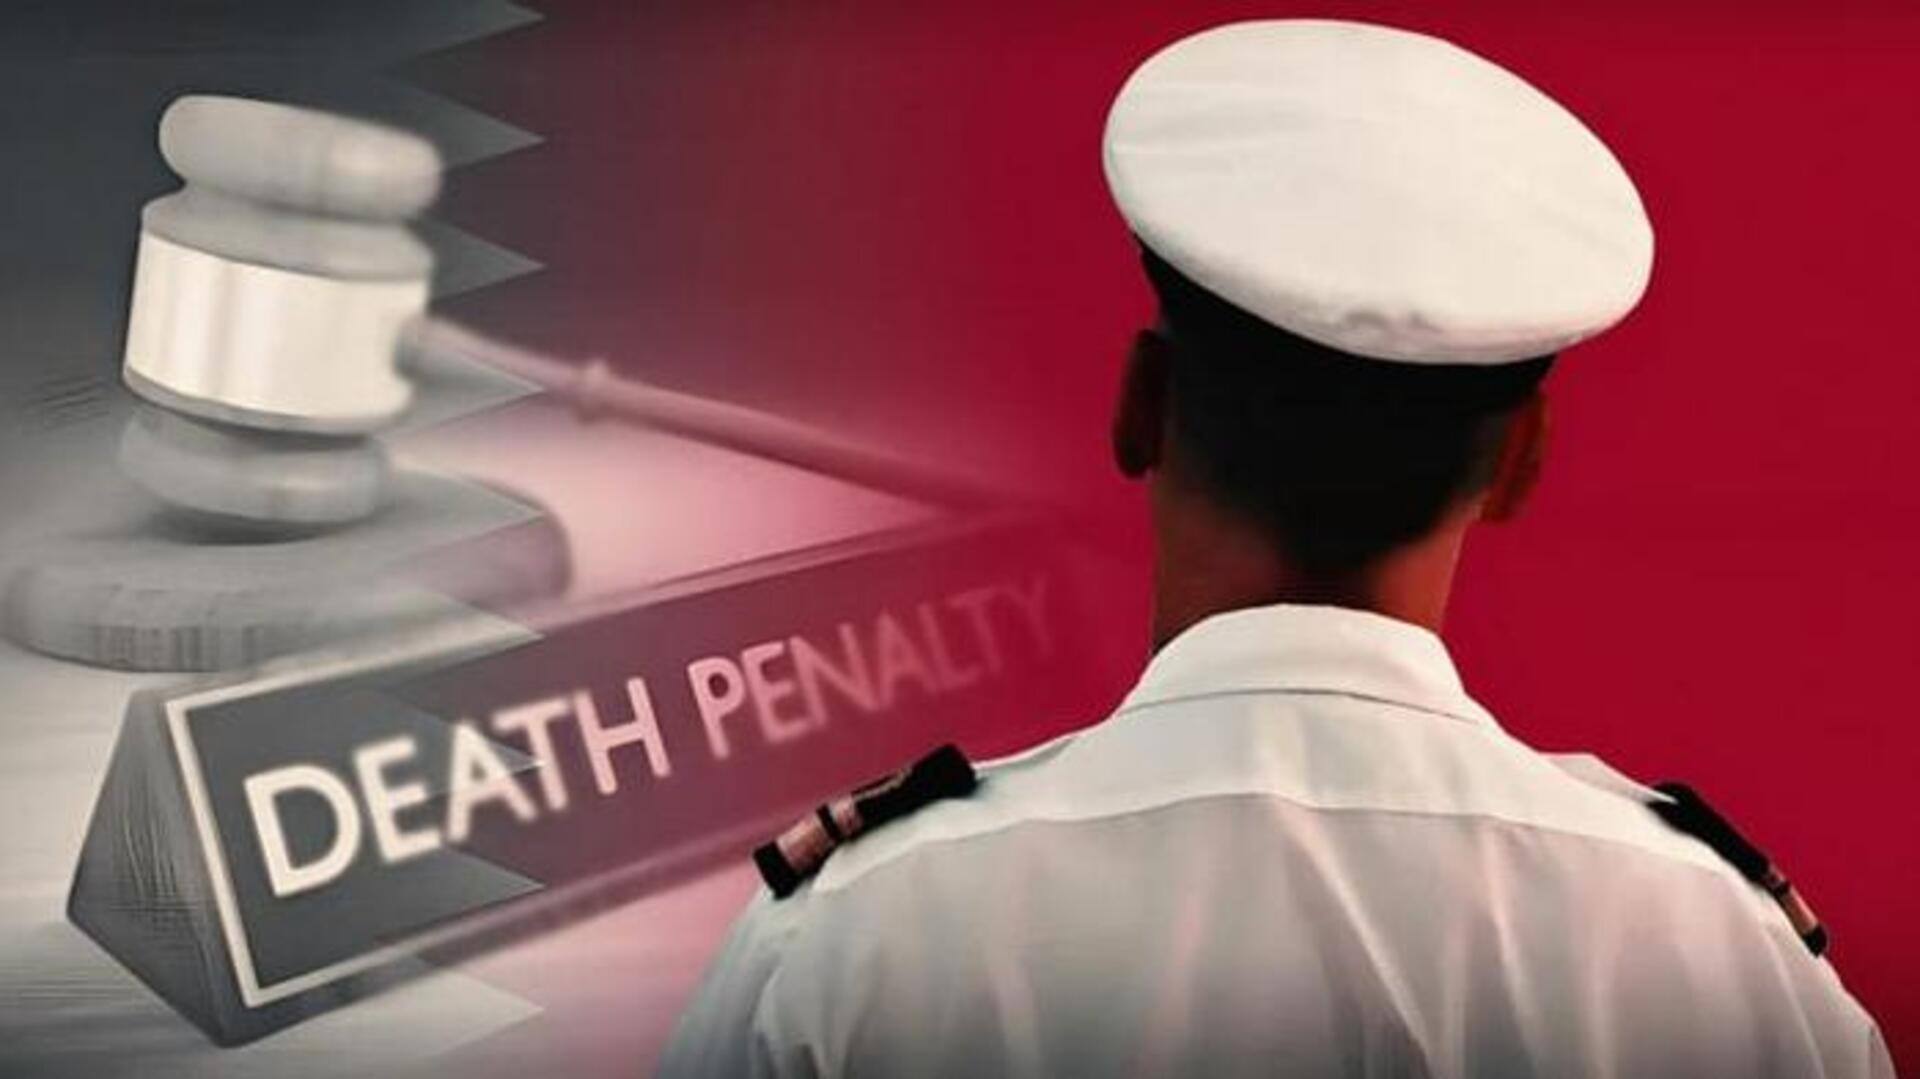 कतर में 8 भारतीय पूर्व नौसैनिकों की मौत की सजा के खिलाफ भारत की अपील